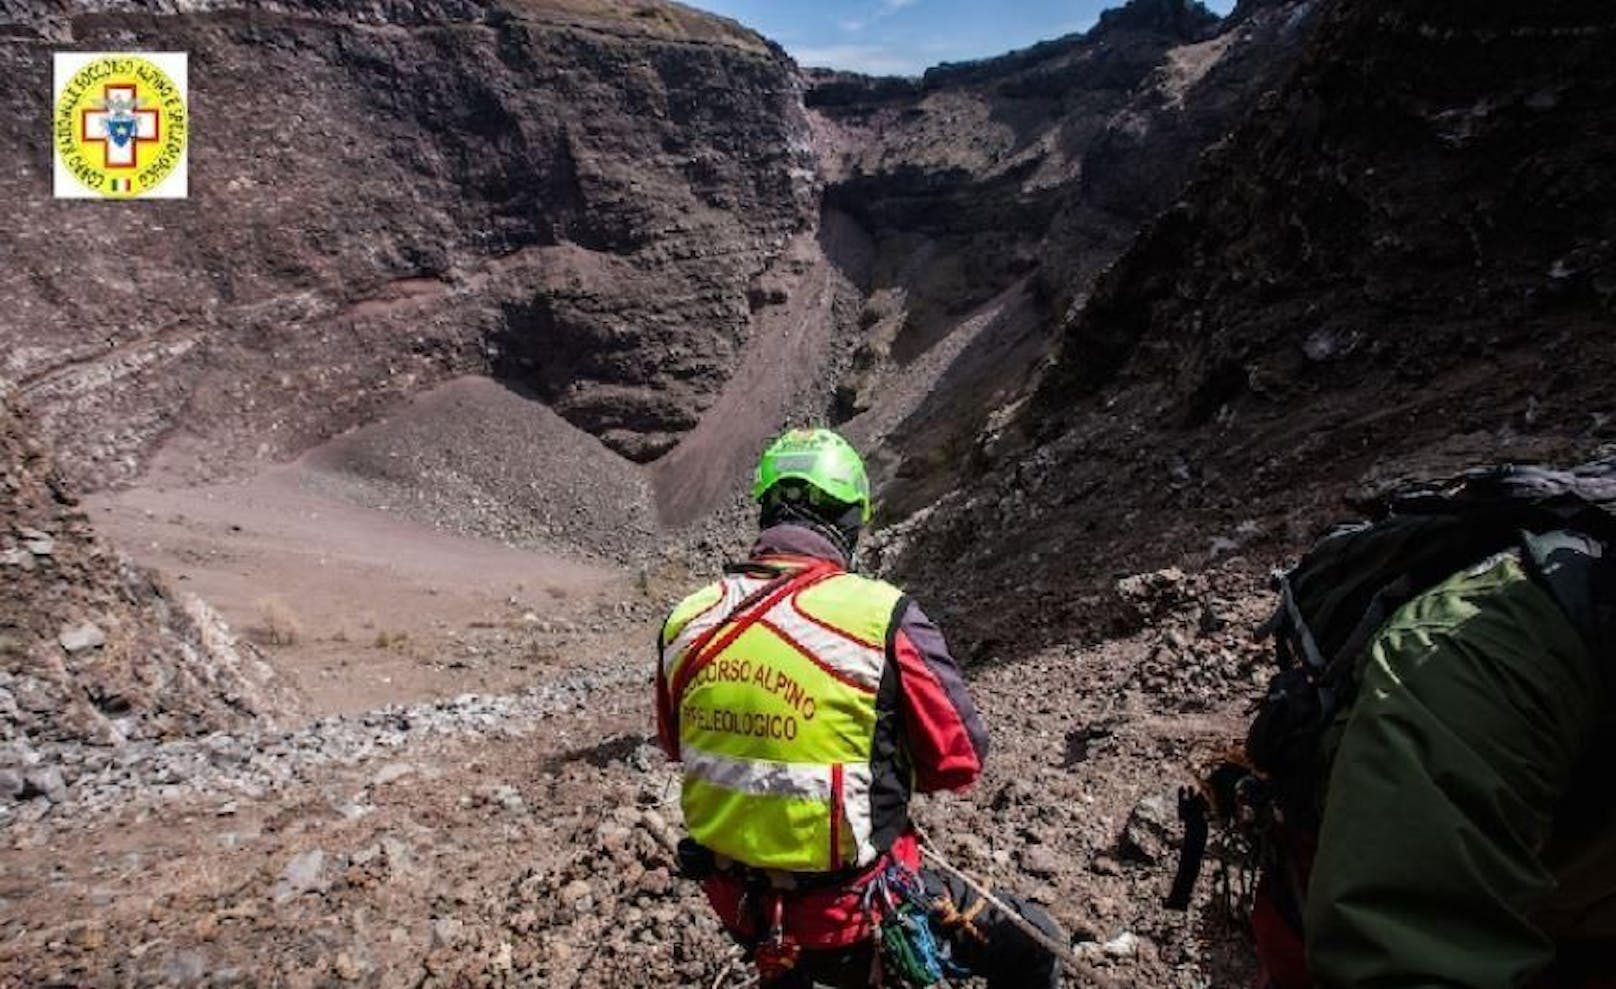 Am 9. Juli 2022 musste ein Tourist aus den USA aus dem Krater des Vesuvs gerettet werden.